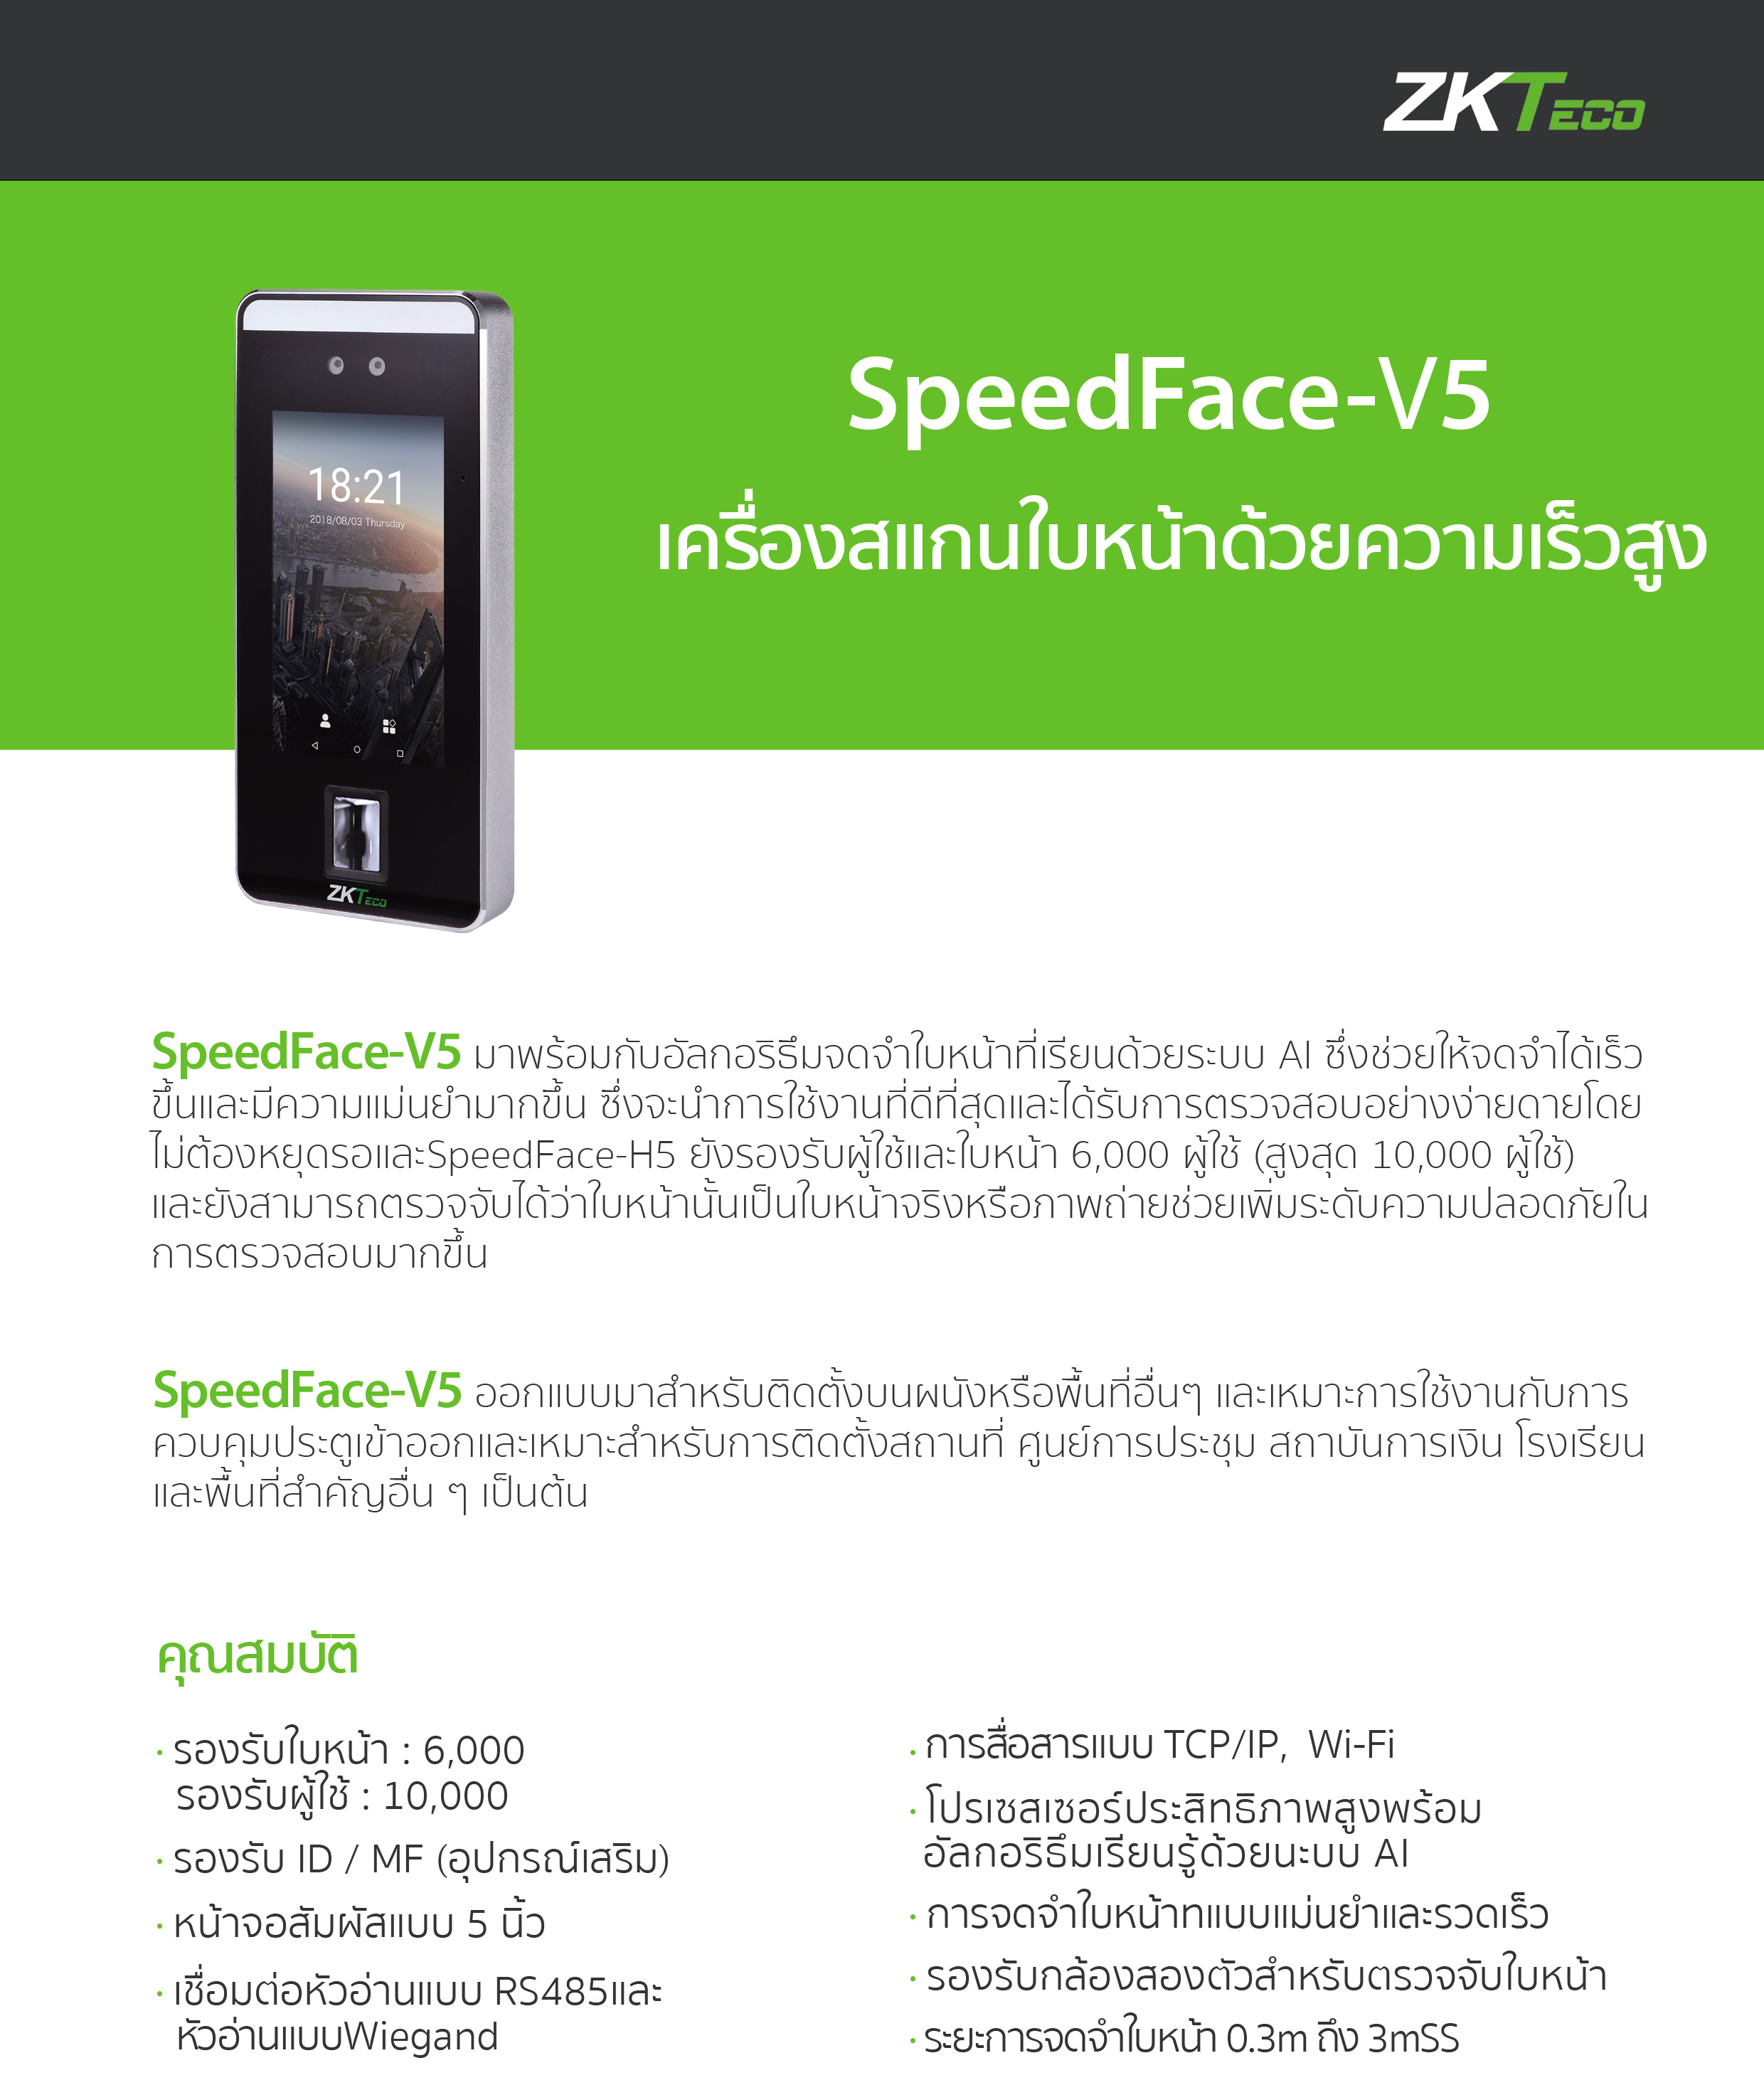 SpeedFace-V5